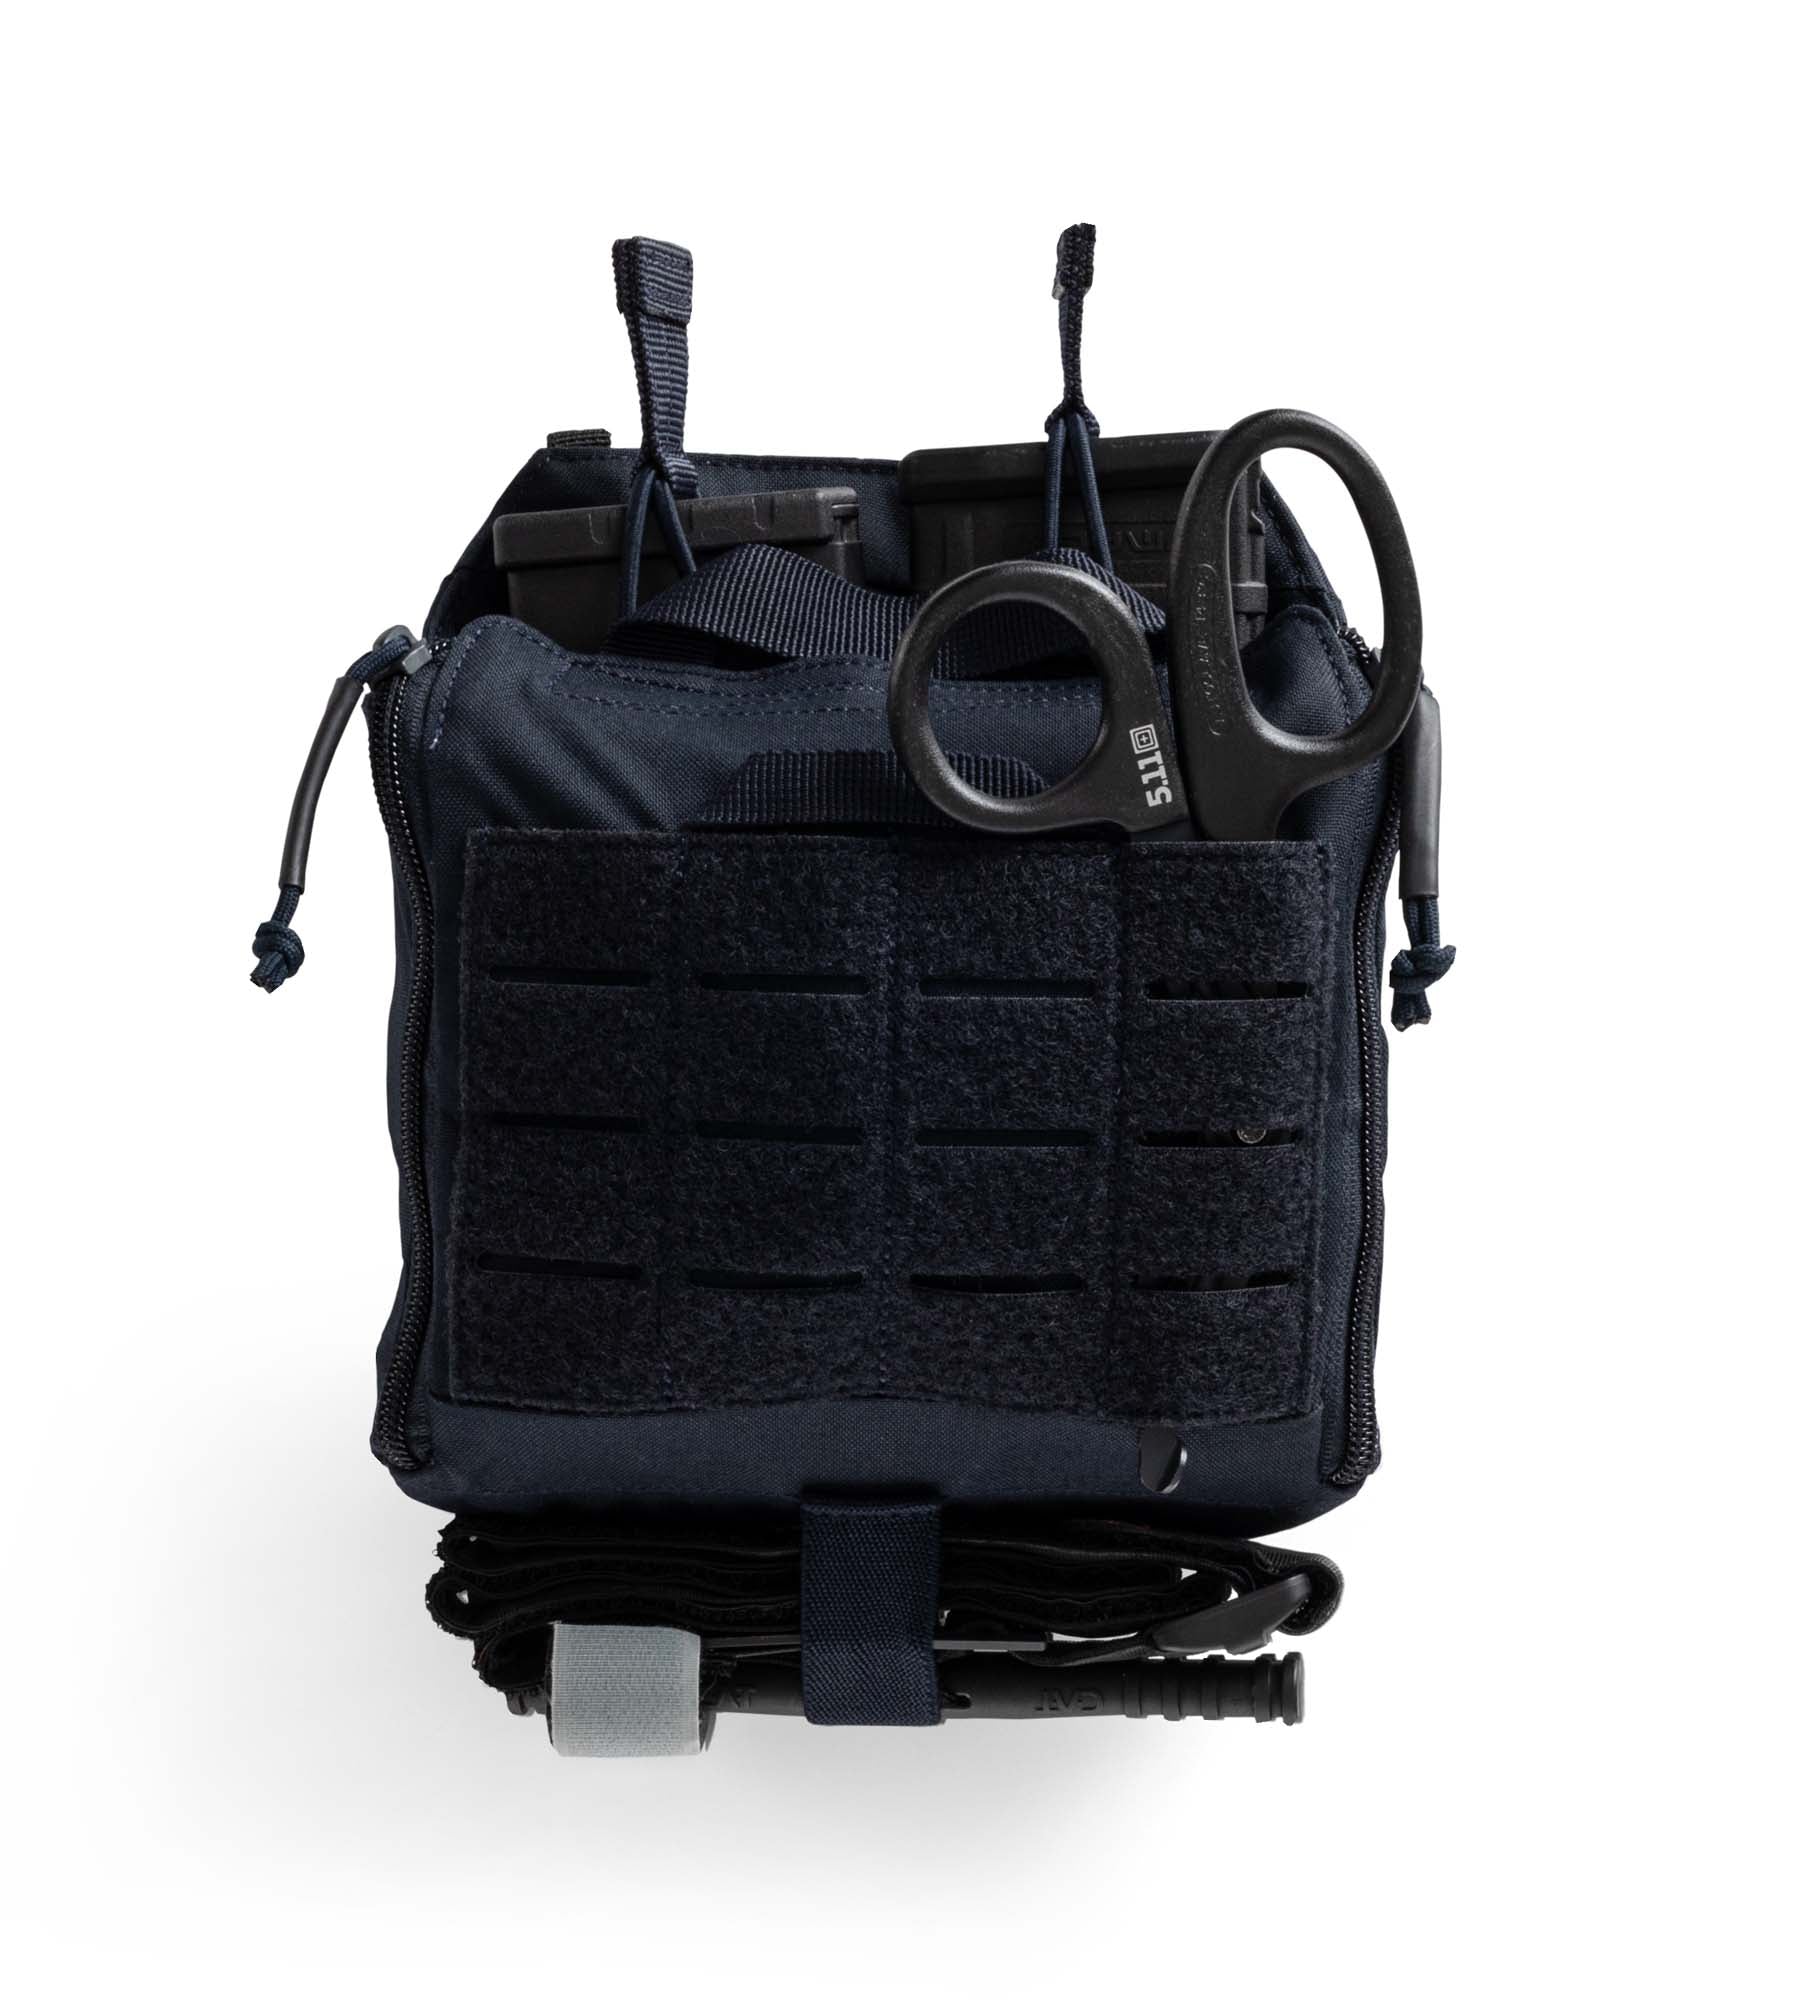 Tasca Flex Tac Med Pouch di 5.11 Blue Navy - vista frontale chiusa con forbici, caricatori AR e tourniquet